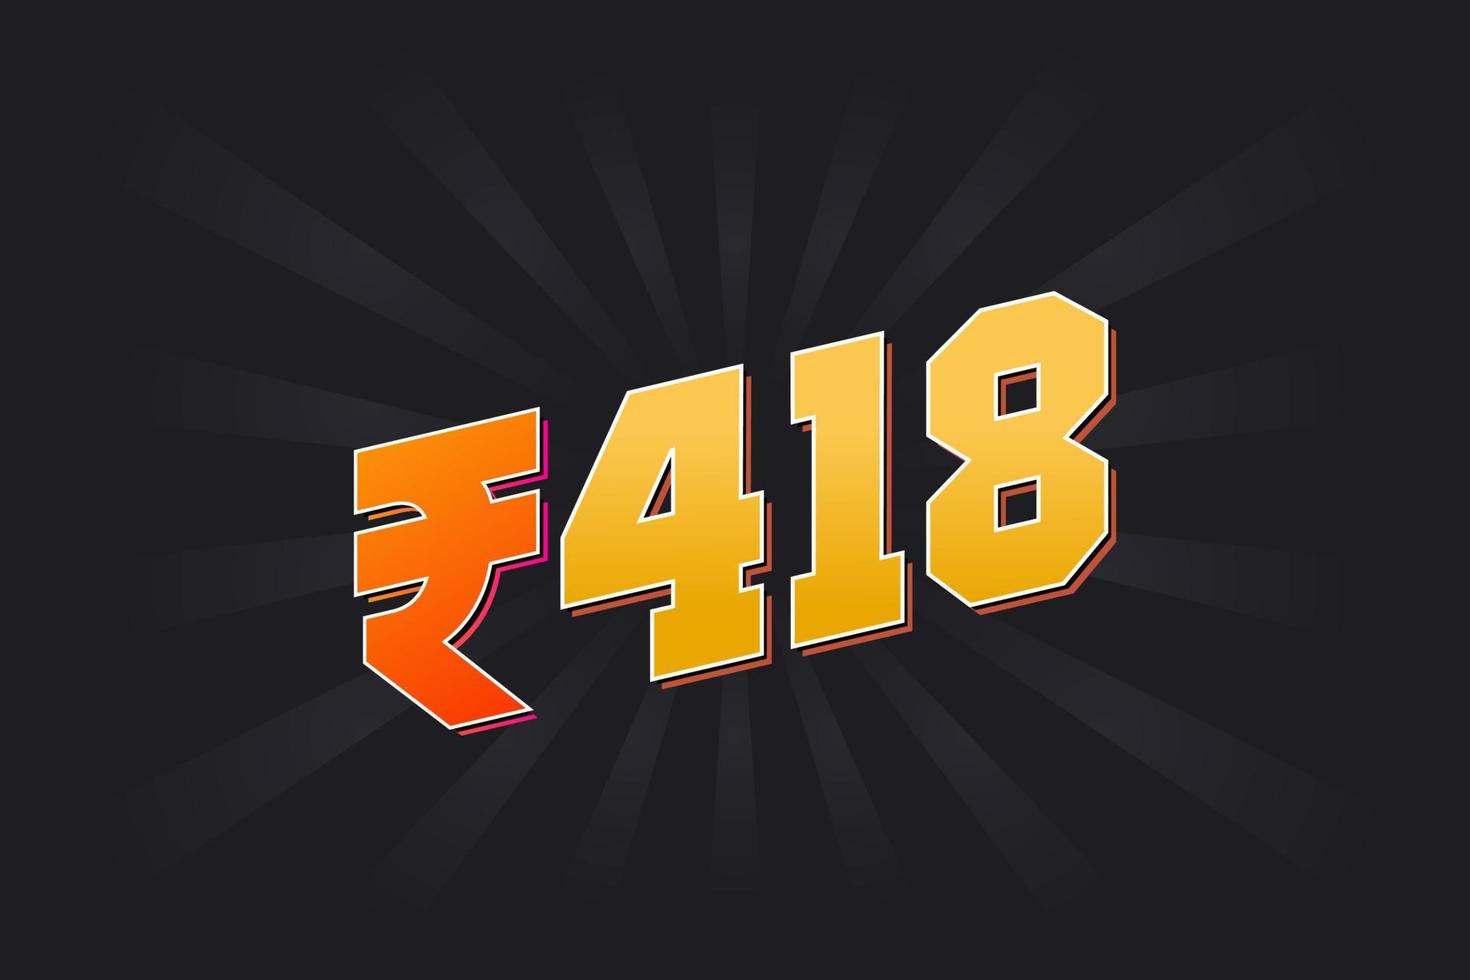 418 indische Rupie Vektorwährungsbild. 418 Rupie Symbol fette Textvektorillustration vektor